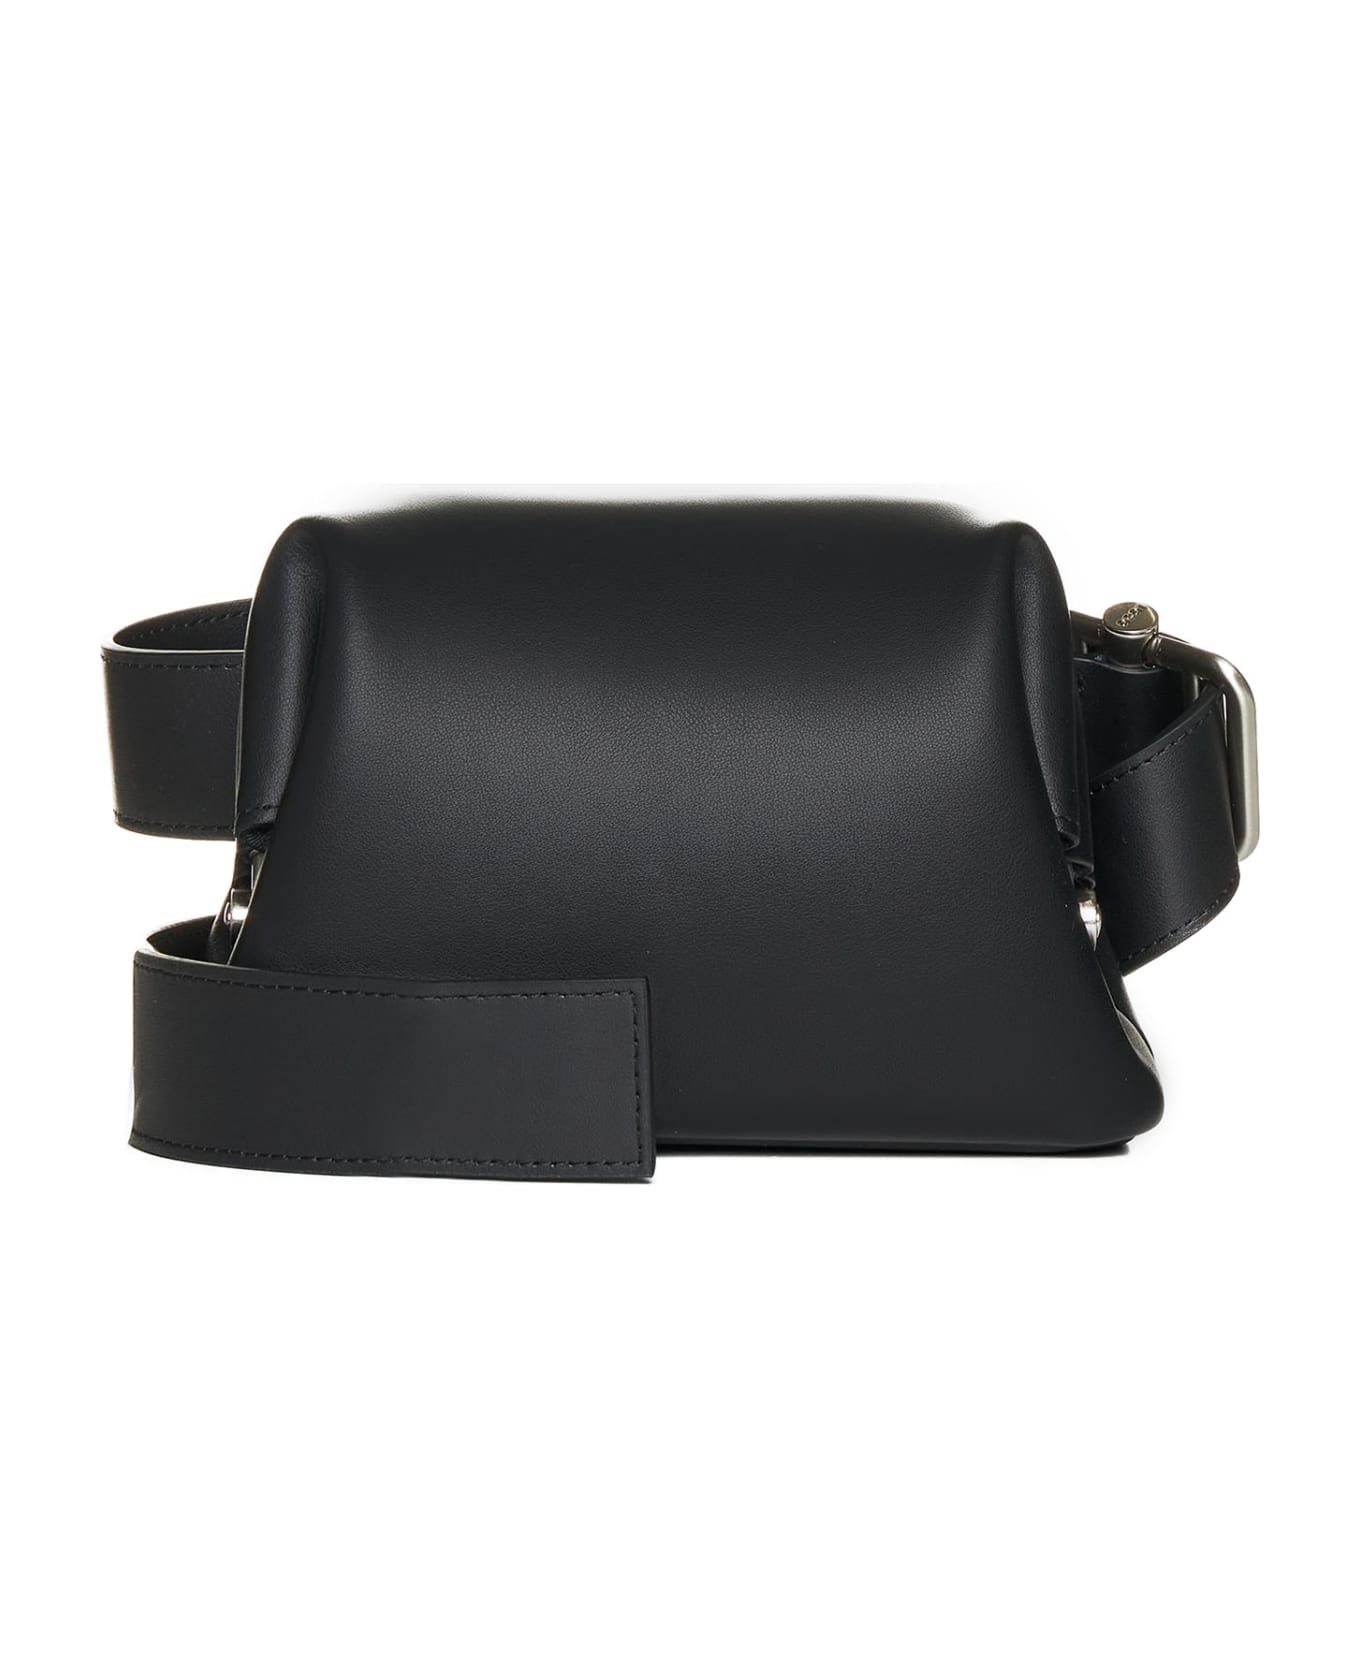 OSOI Shoulder Bag - Black ショルダーバッグ